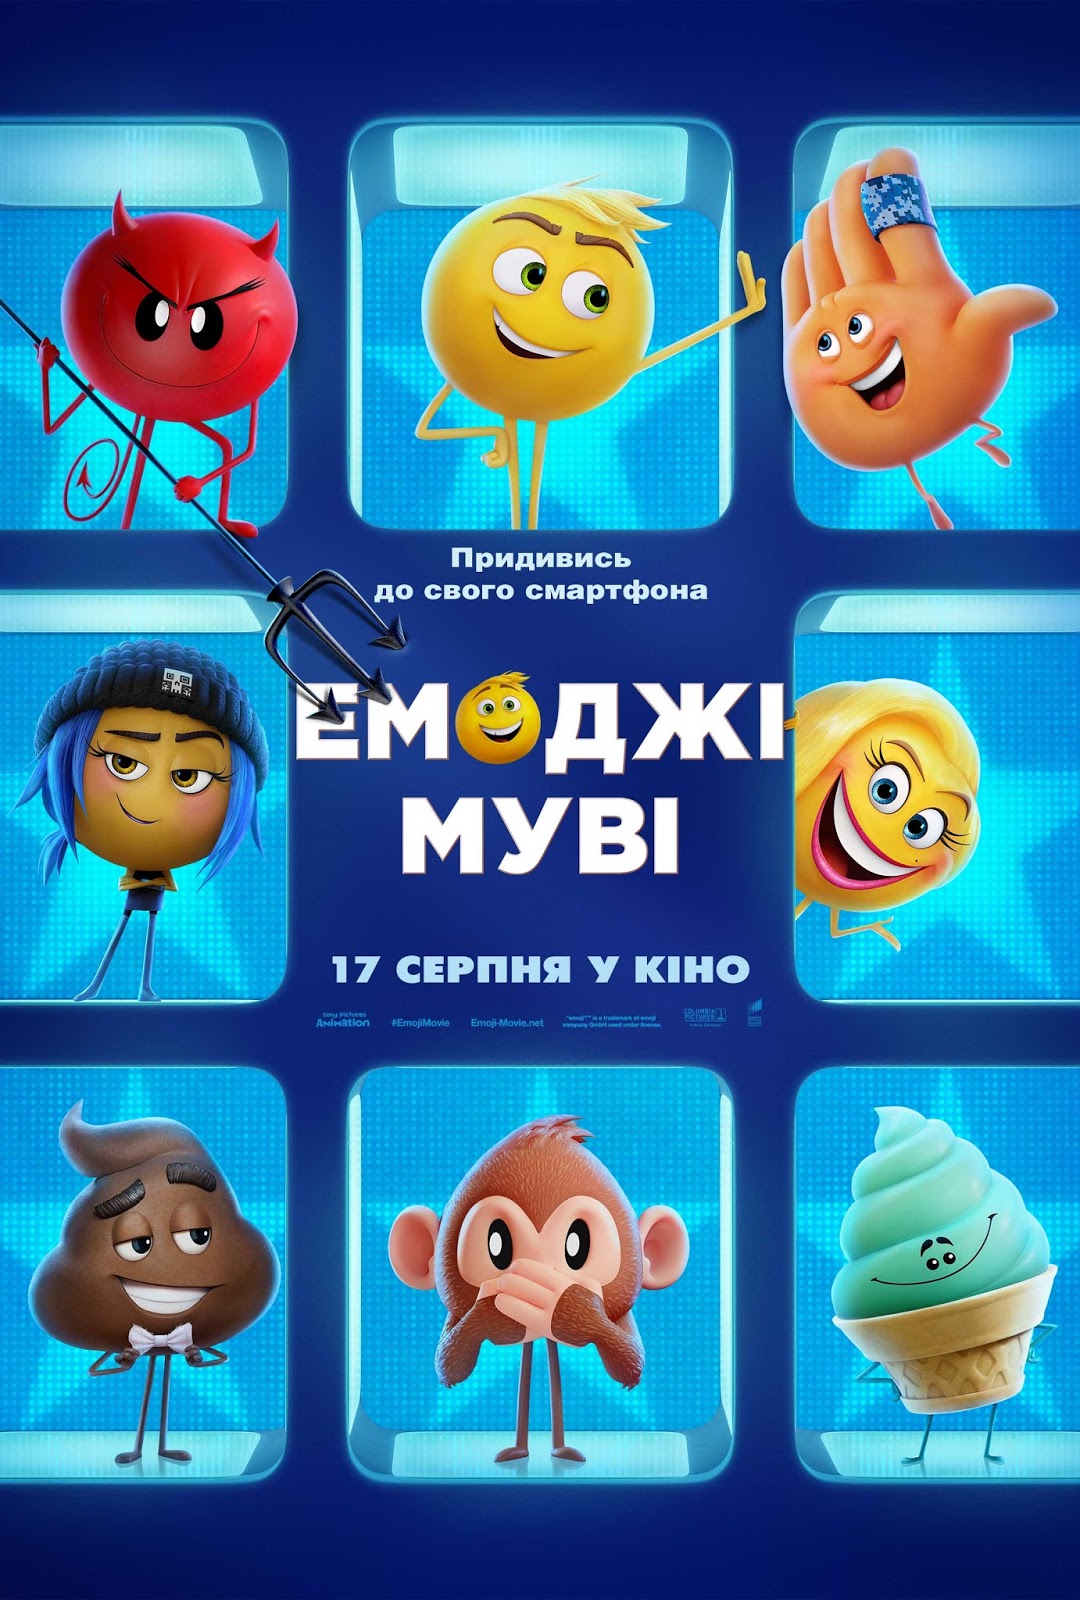 The Emoji Movie или мое отношение к смайликам изменилось навсегда :)